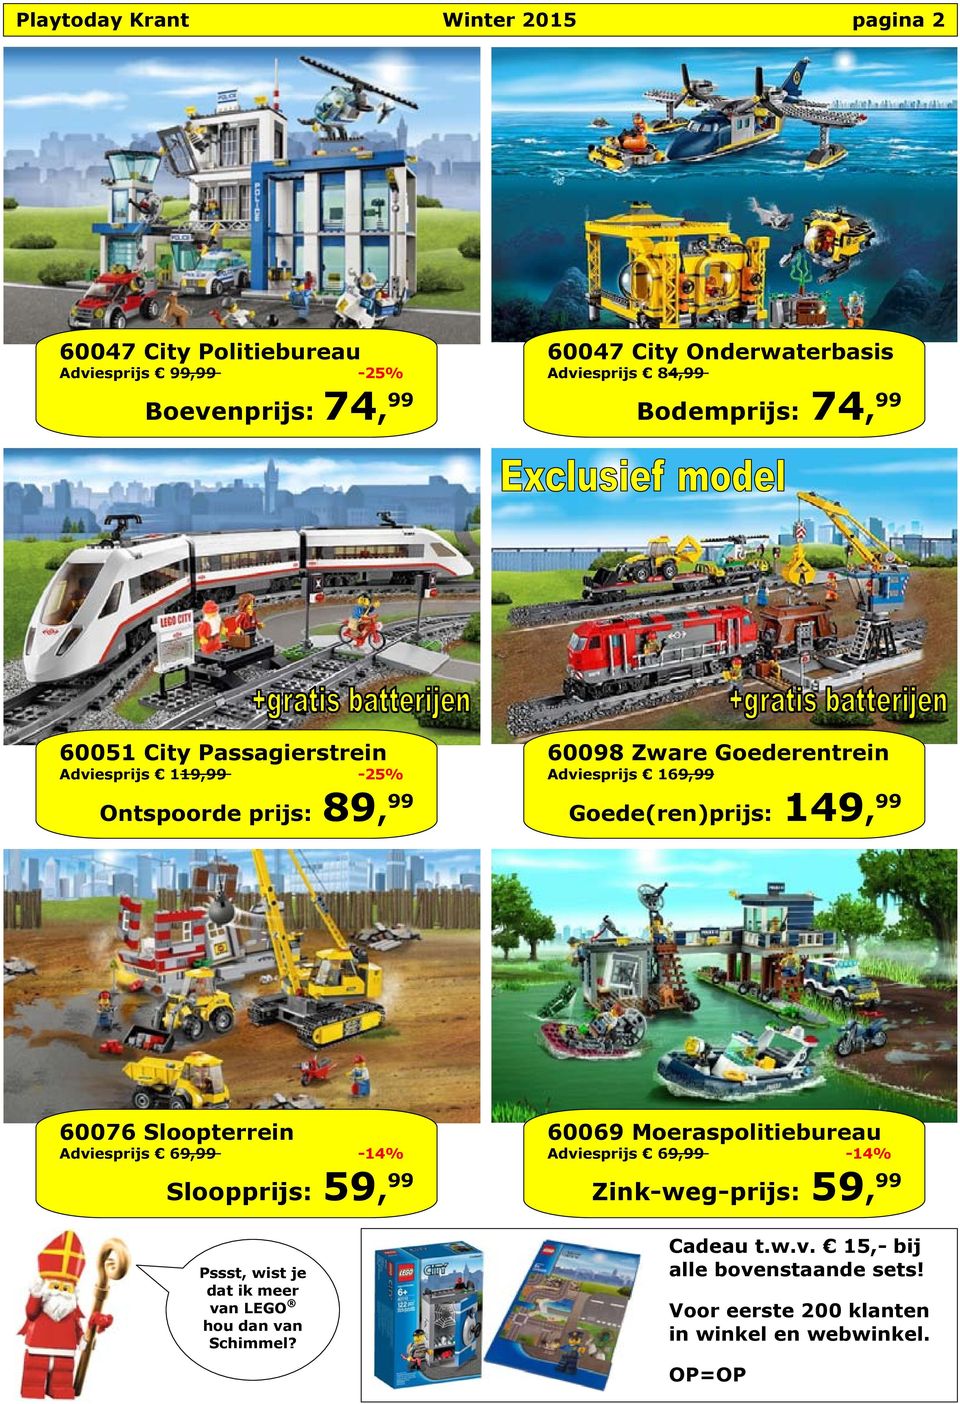 Goede(ren)prijs: 149, 99 60076 Sloopterrein Adviesprijs 69,99-14% Sloopprijs: 59, 99 Pssst, wist je dat ik meer van LEGO hou dan van Schimmel?